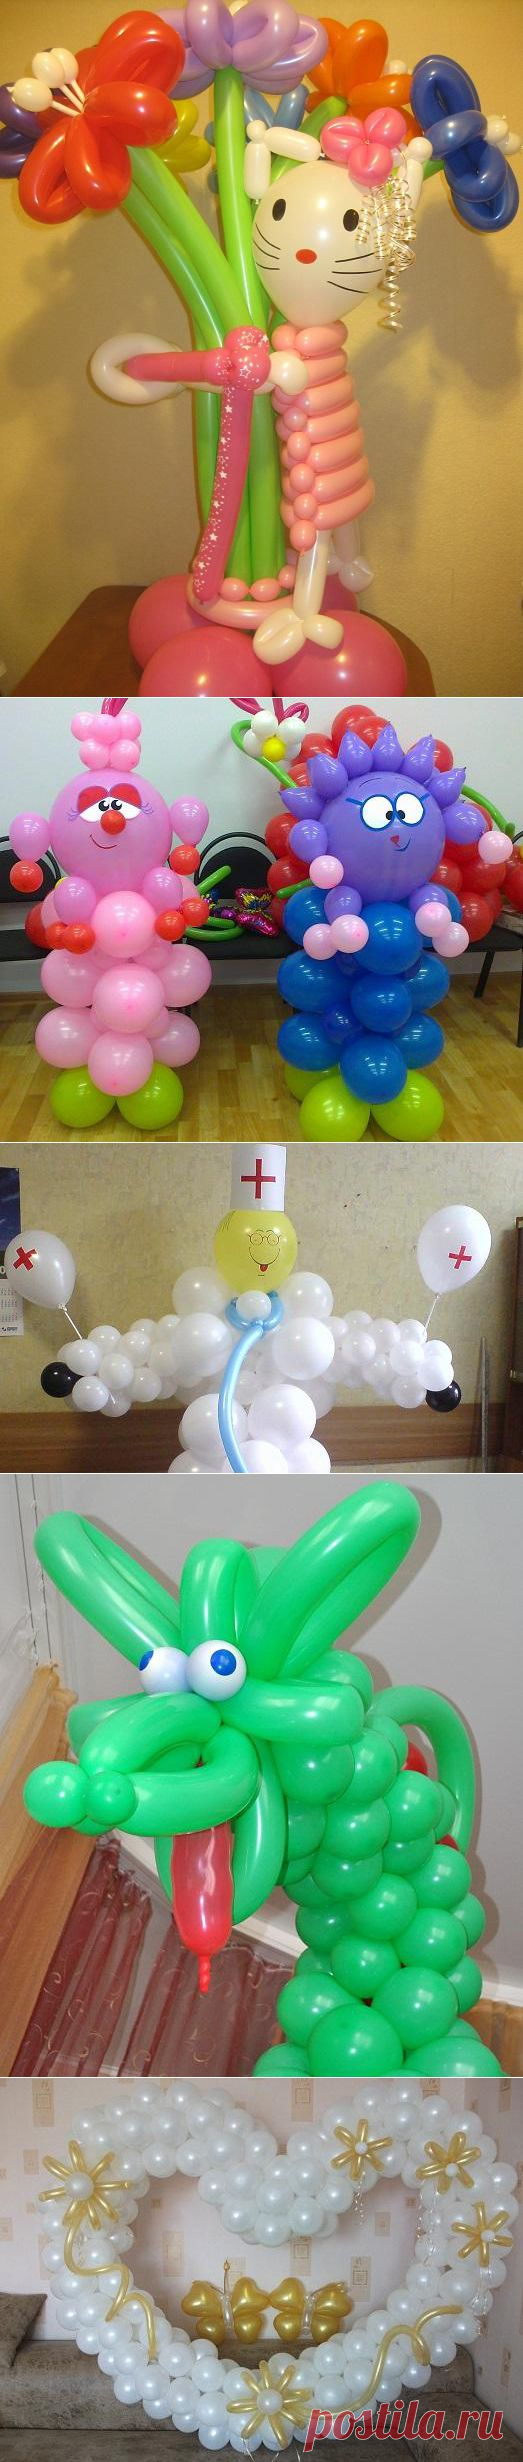 Как сделать своими руками фигуры из воздушных шаров?